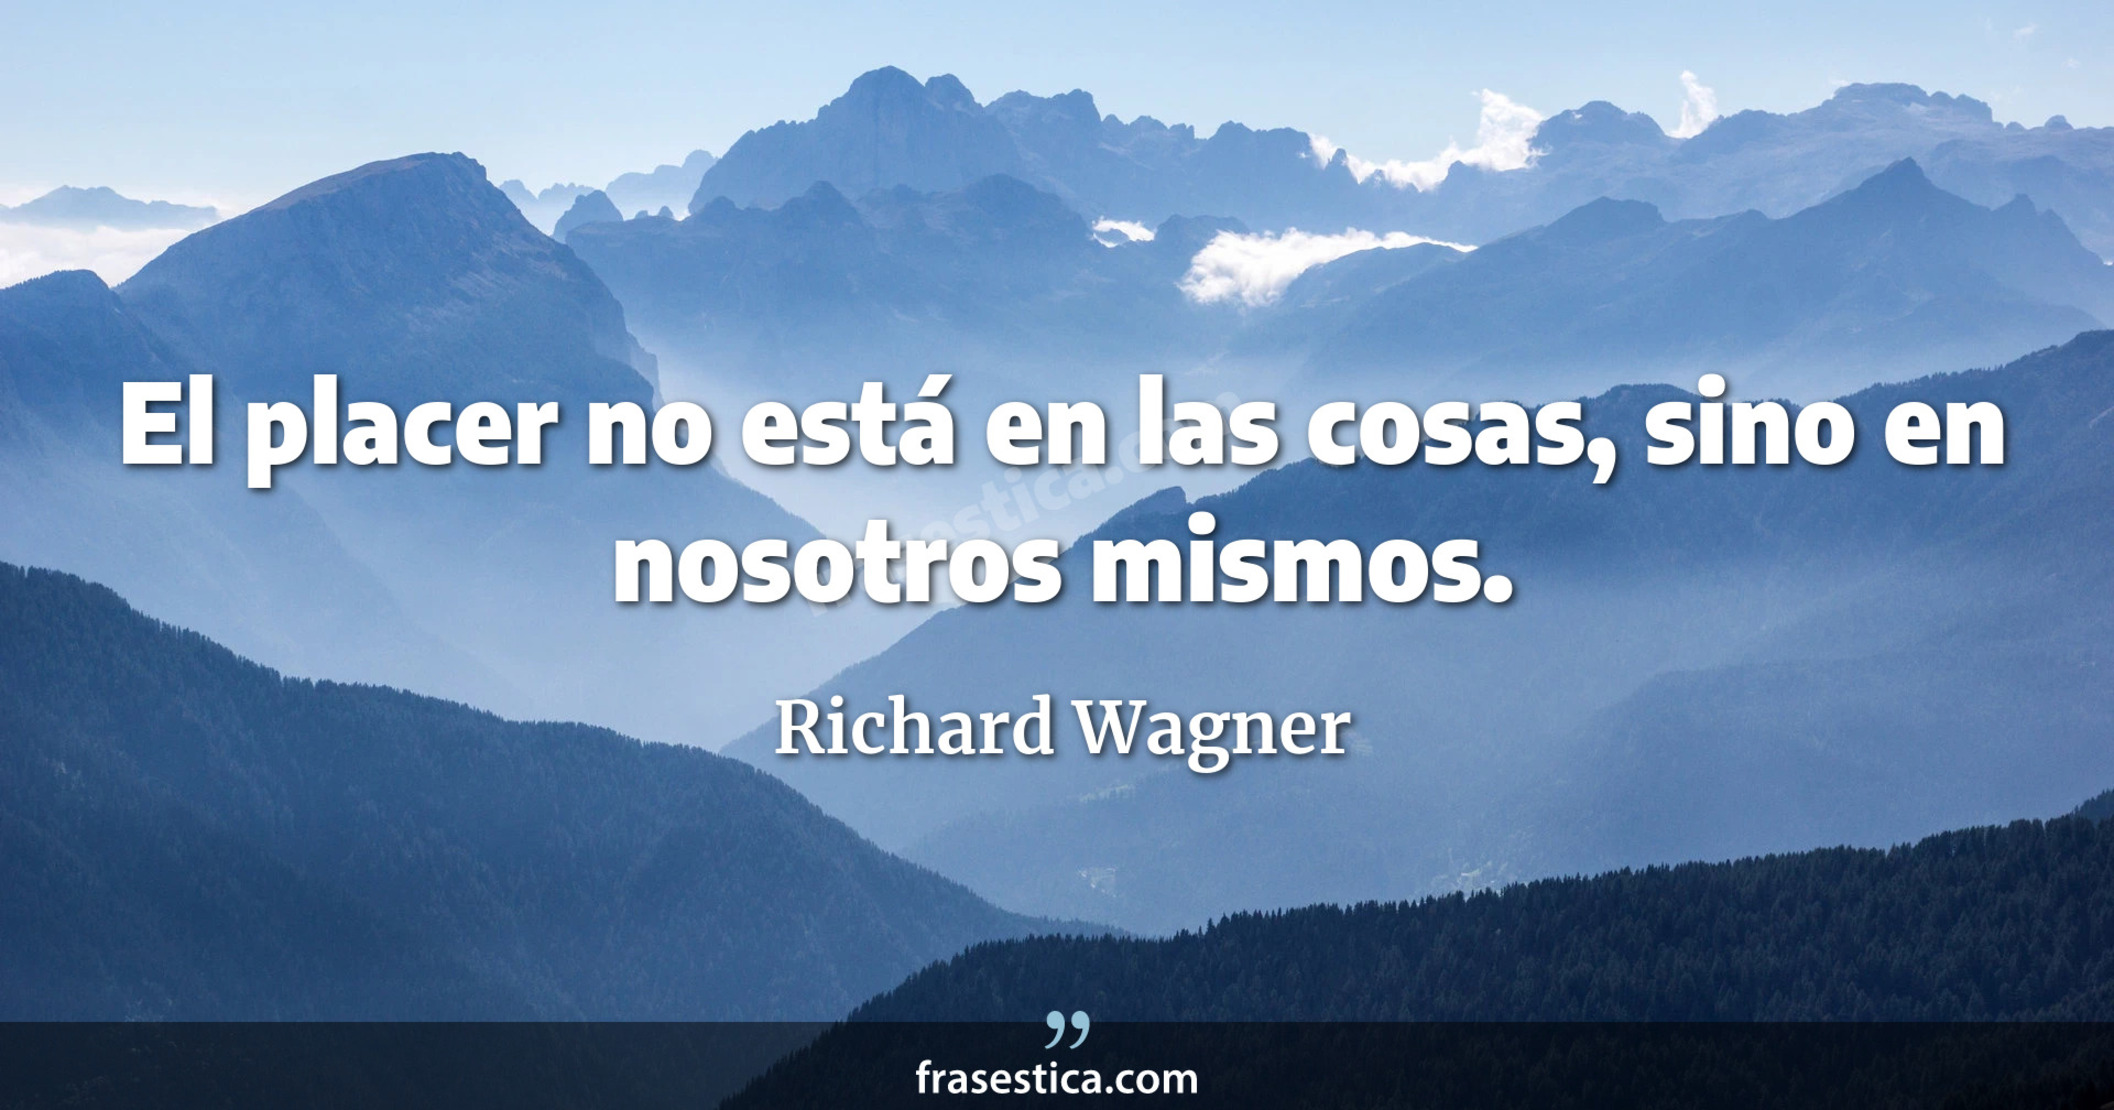 El placer no está en las cosas, sino en nosotros mismos. - Richard Wagner